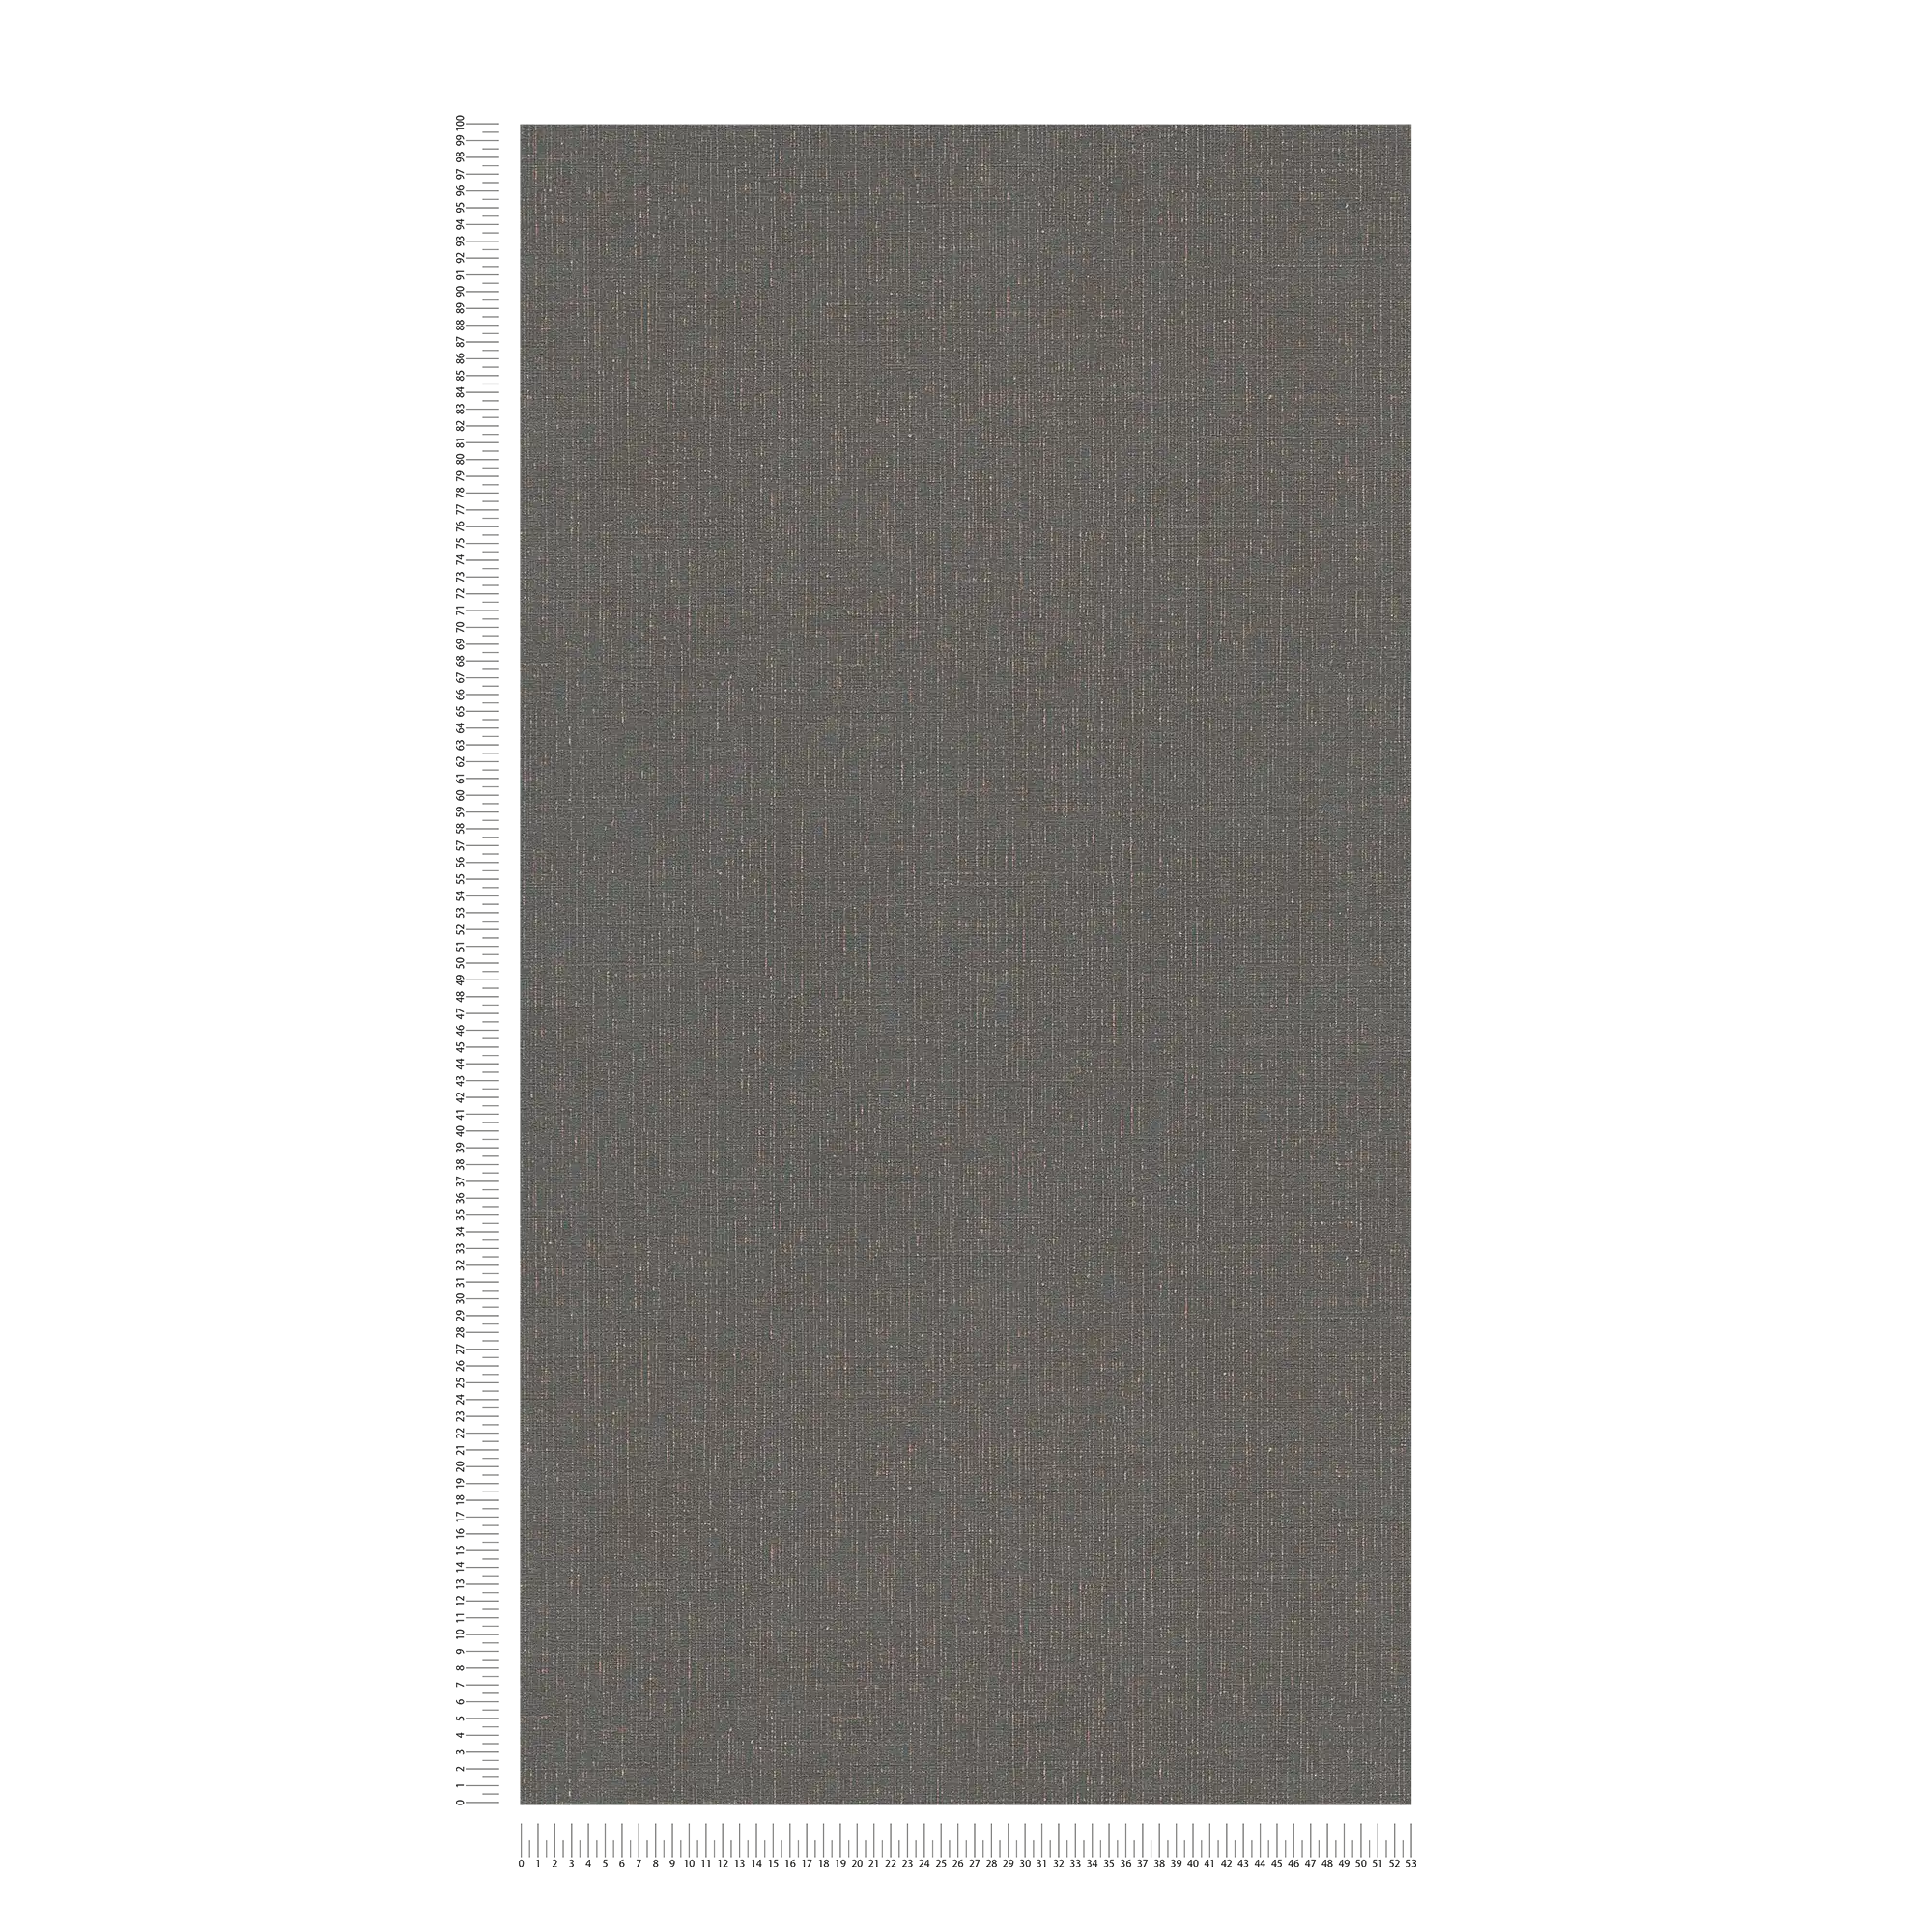             Textiloptik Tapete Anthrazit mit Leinenstruktur – Schwarz, Grau
        